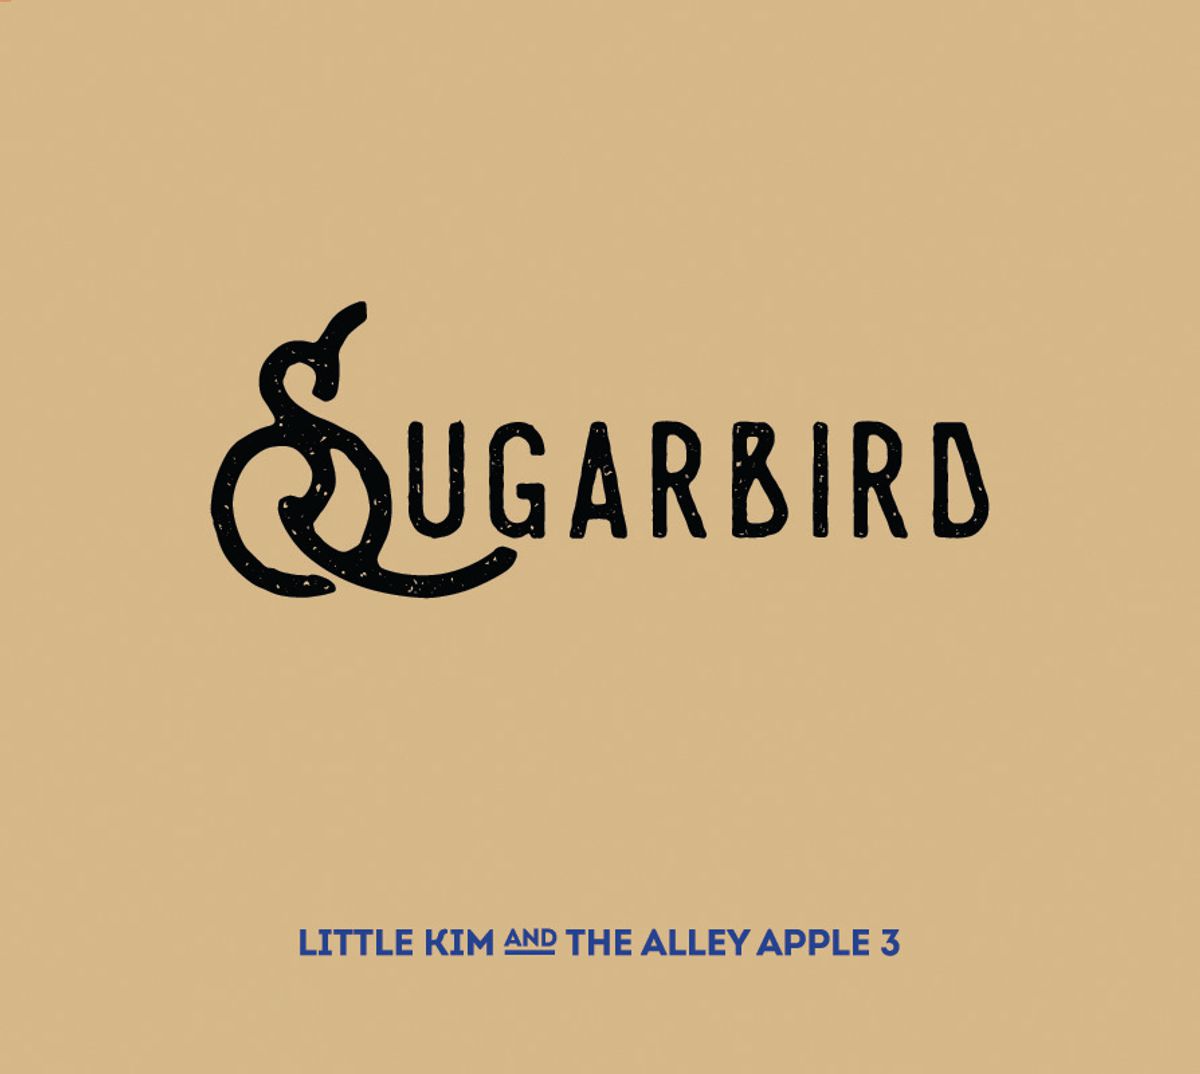 Sugarbird